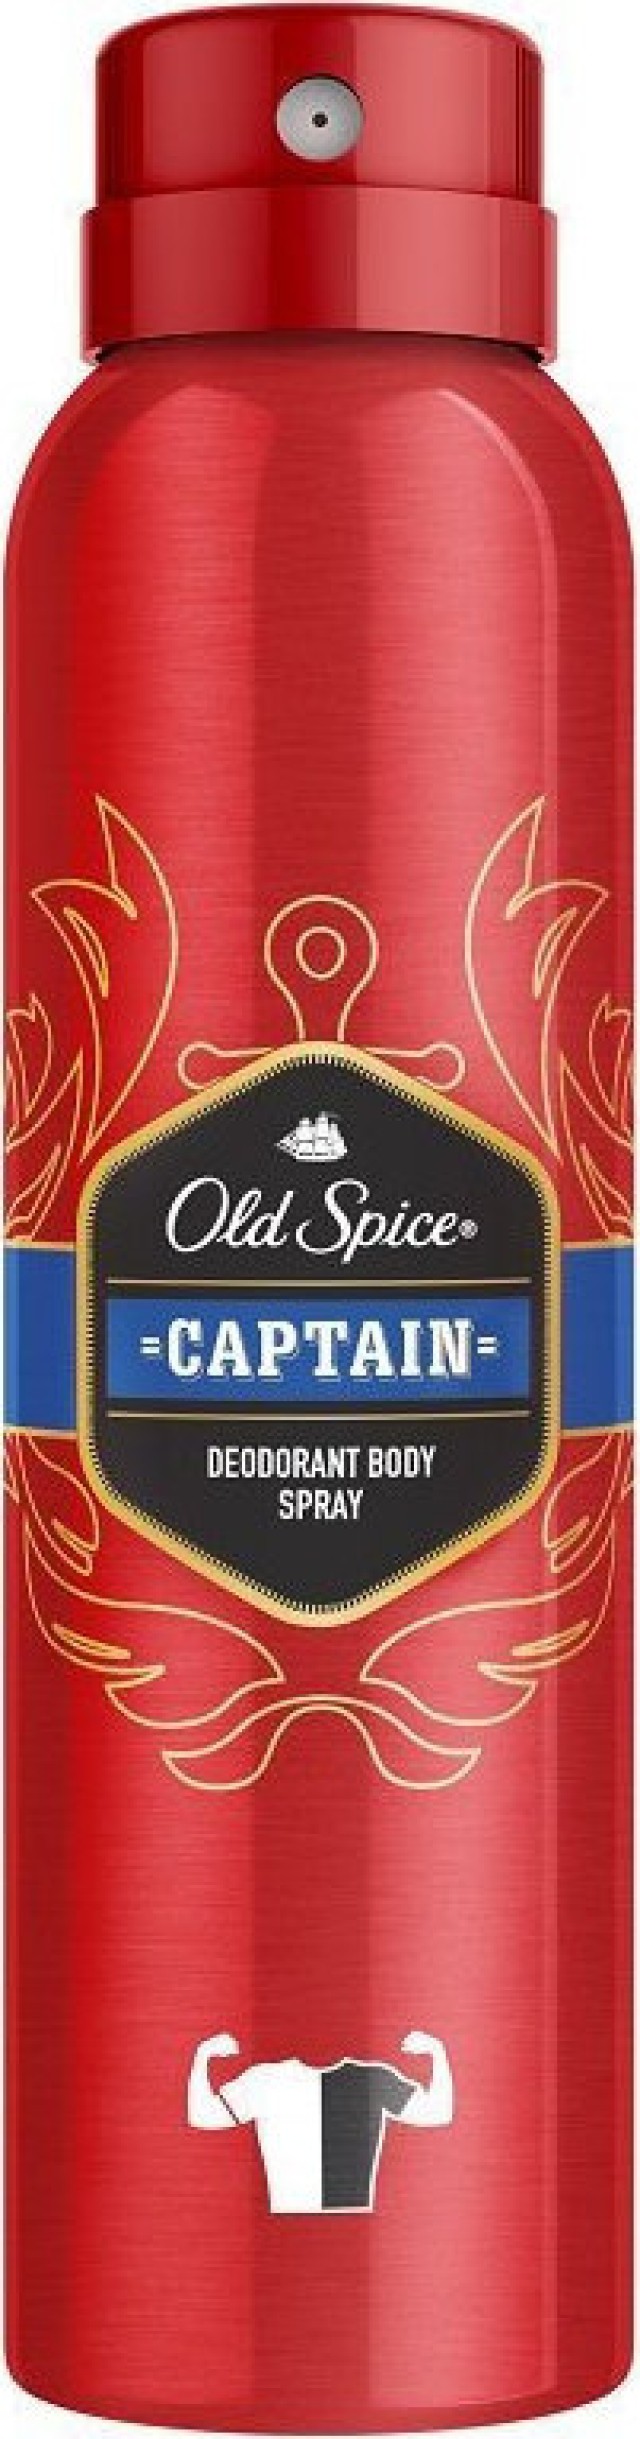 Old Spice Captain Deodorant Body Spray Αποσμητικό Σπρέι Σώματος για Άνδρες 150ml